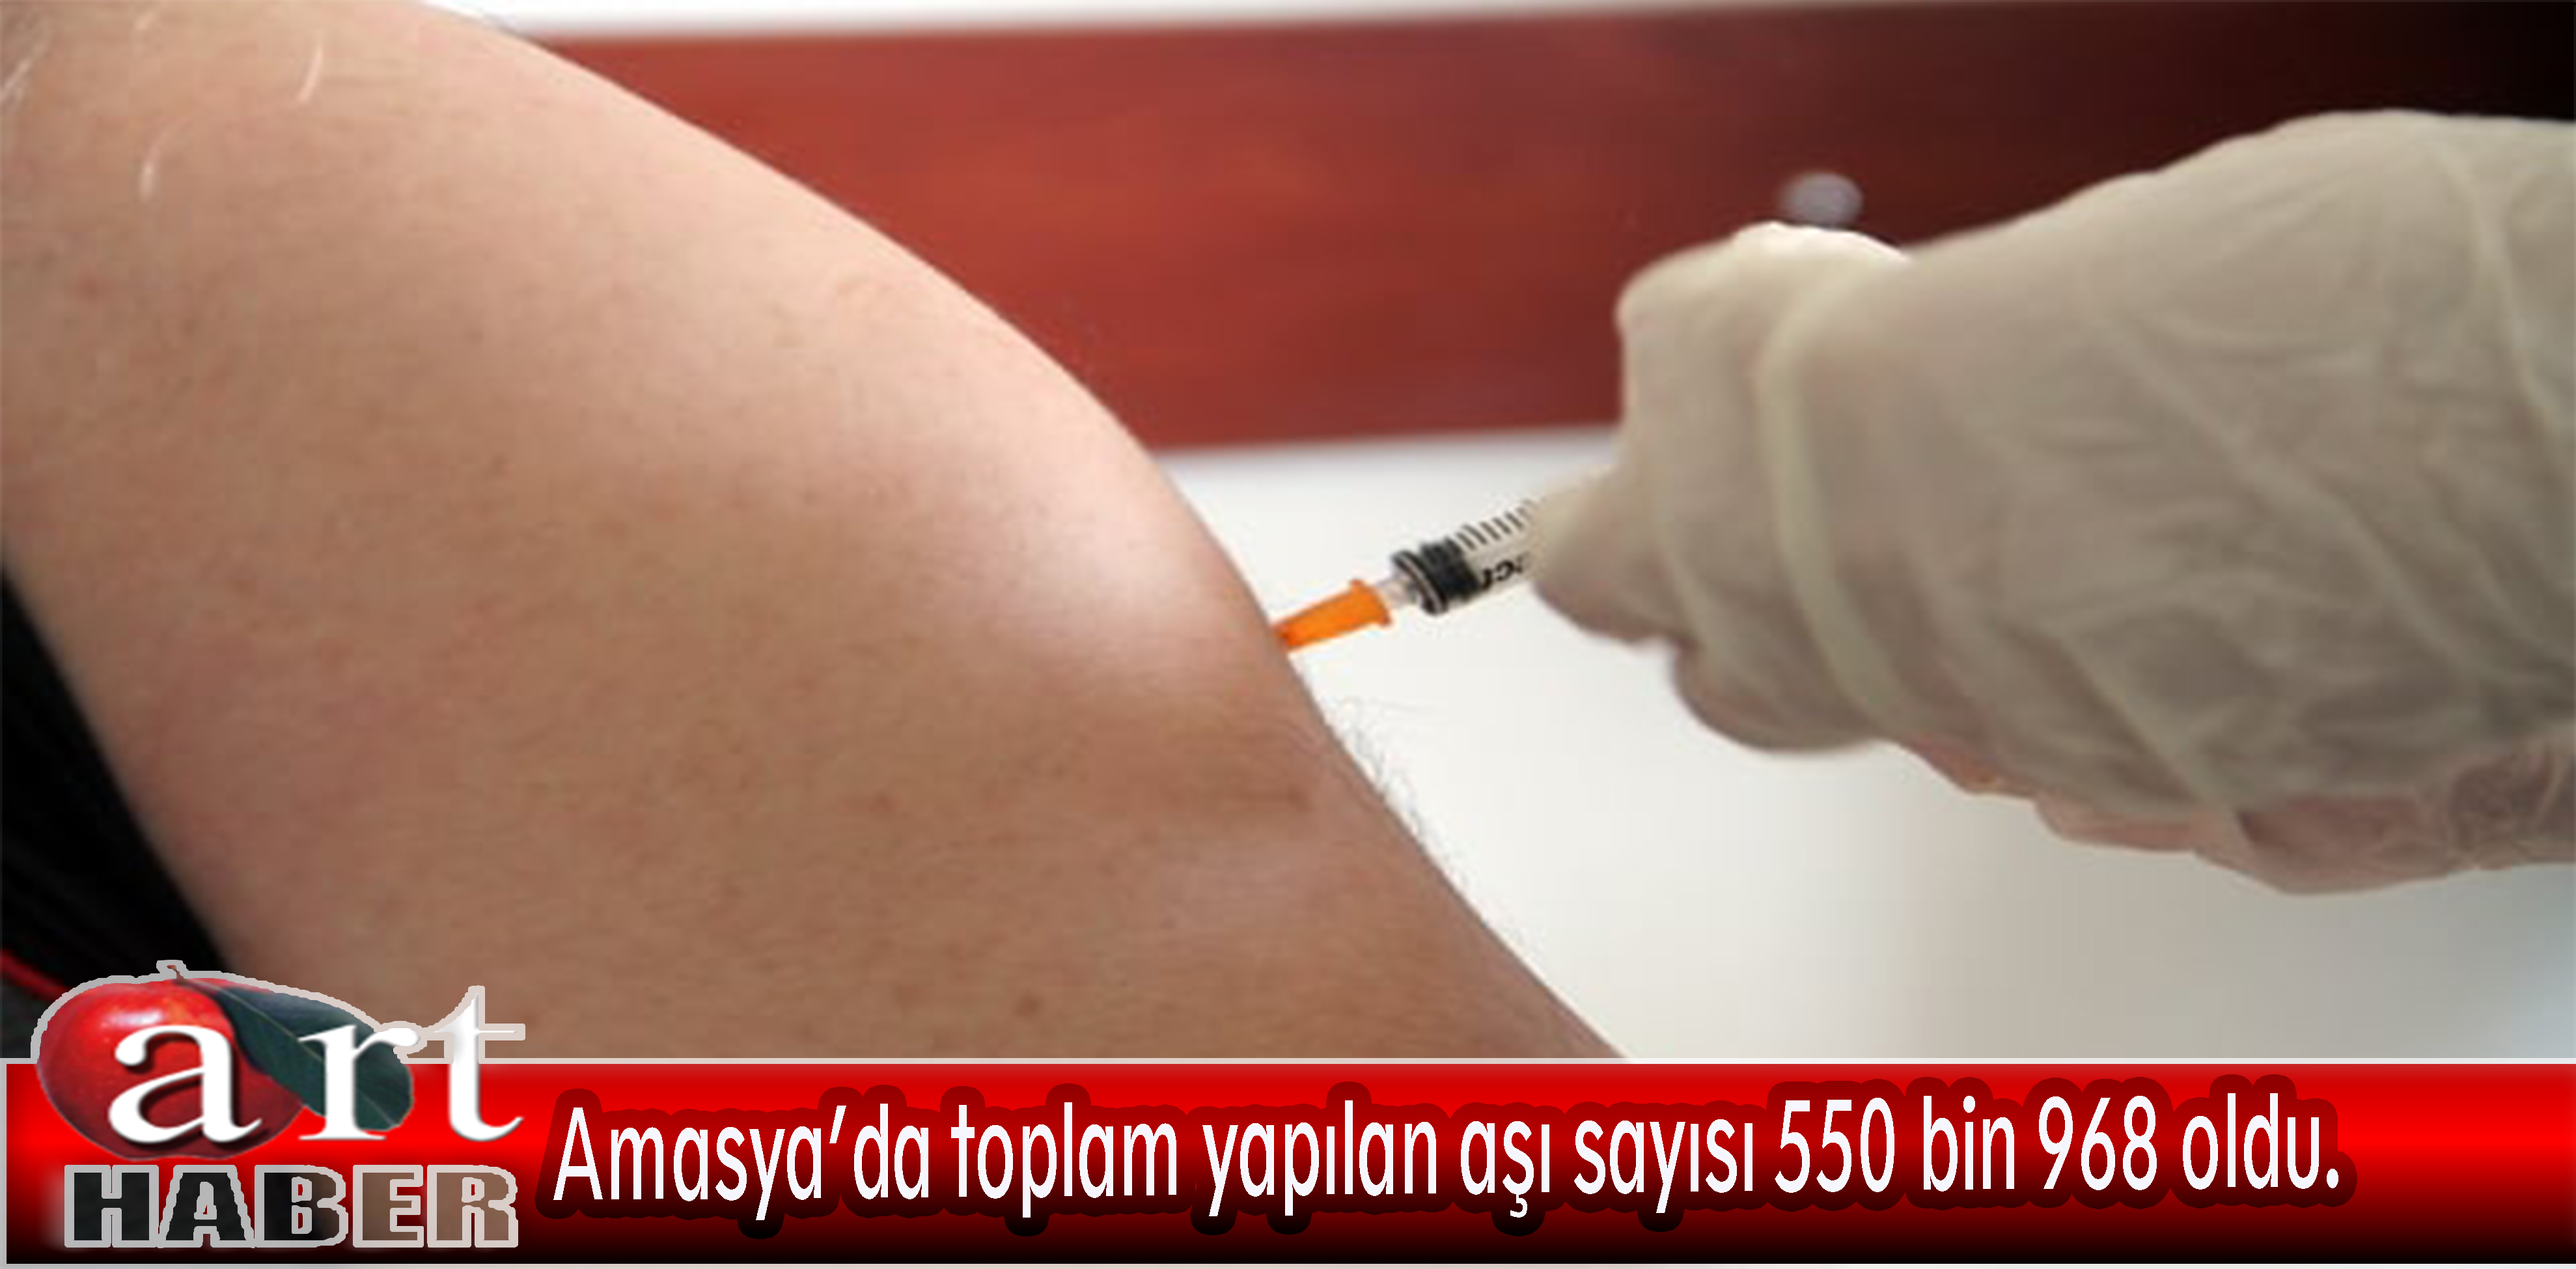 Kovid-19 ile mücadele kapsamında Amasya’da toplam yapılan aşı sayısı 550 bin 968 oldu.